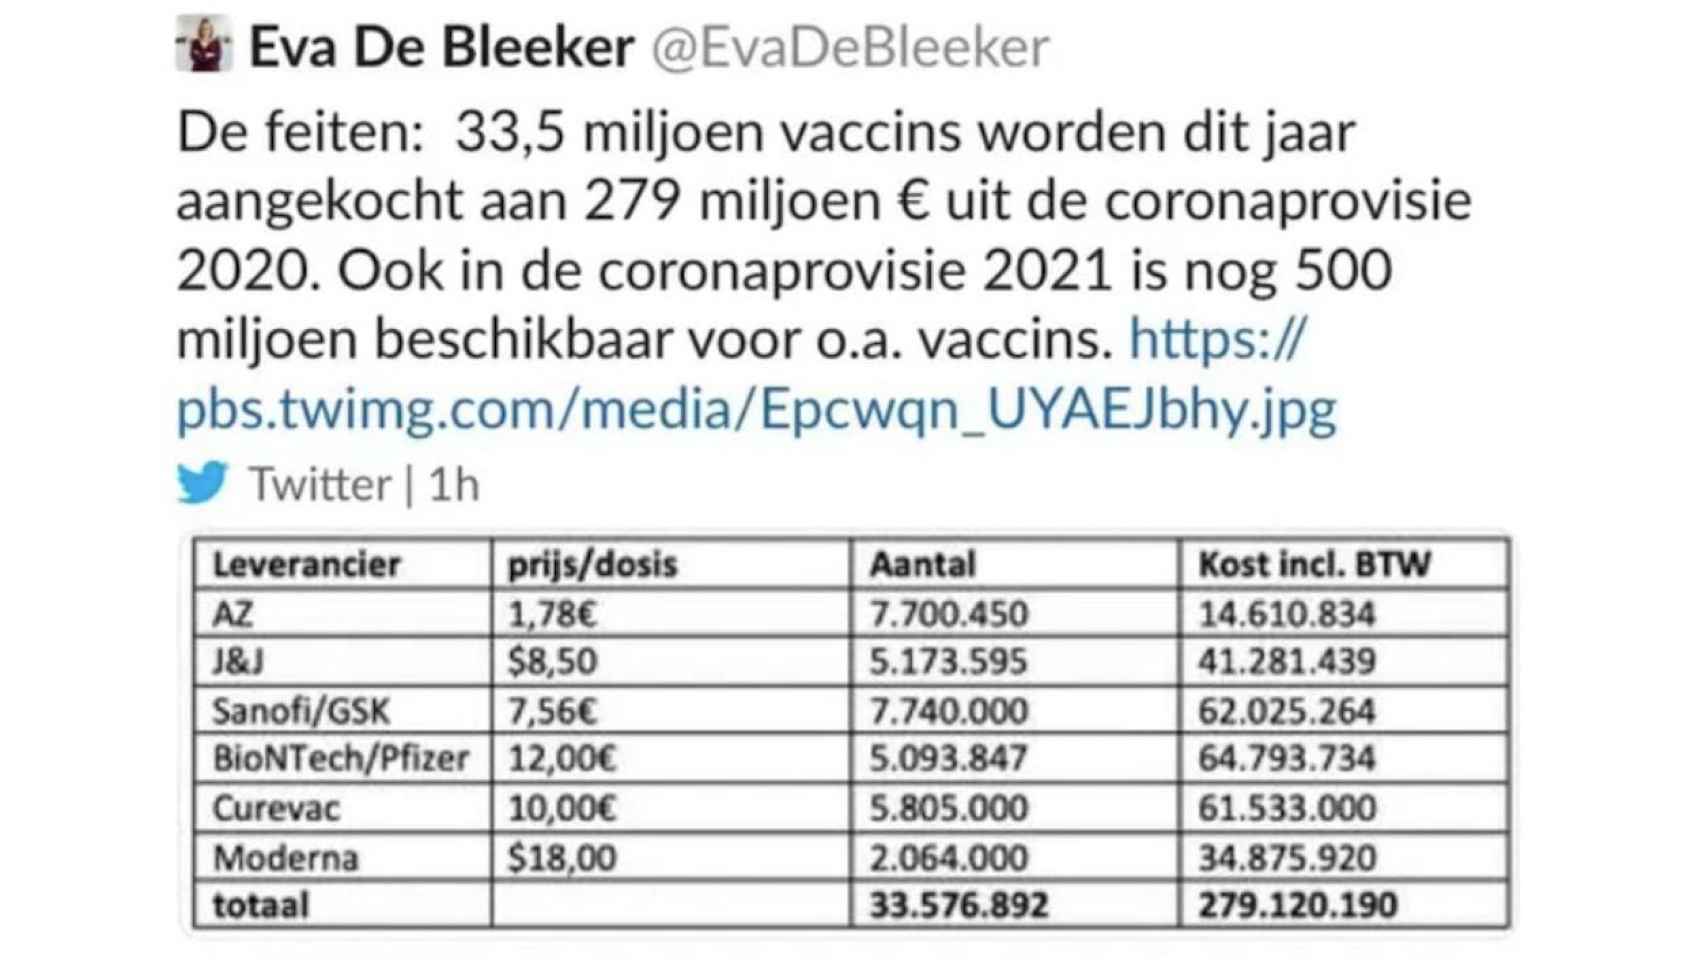 Imagen con los precios por dosis de las vacunas contra la Covid-19 publicado por la política belga en su Twitter.